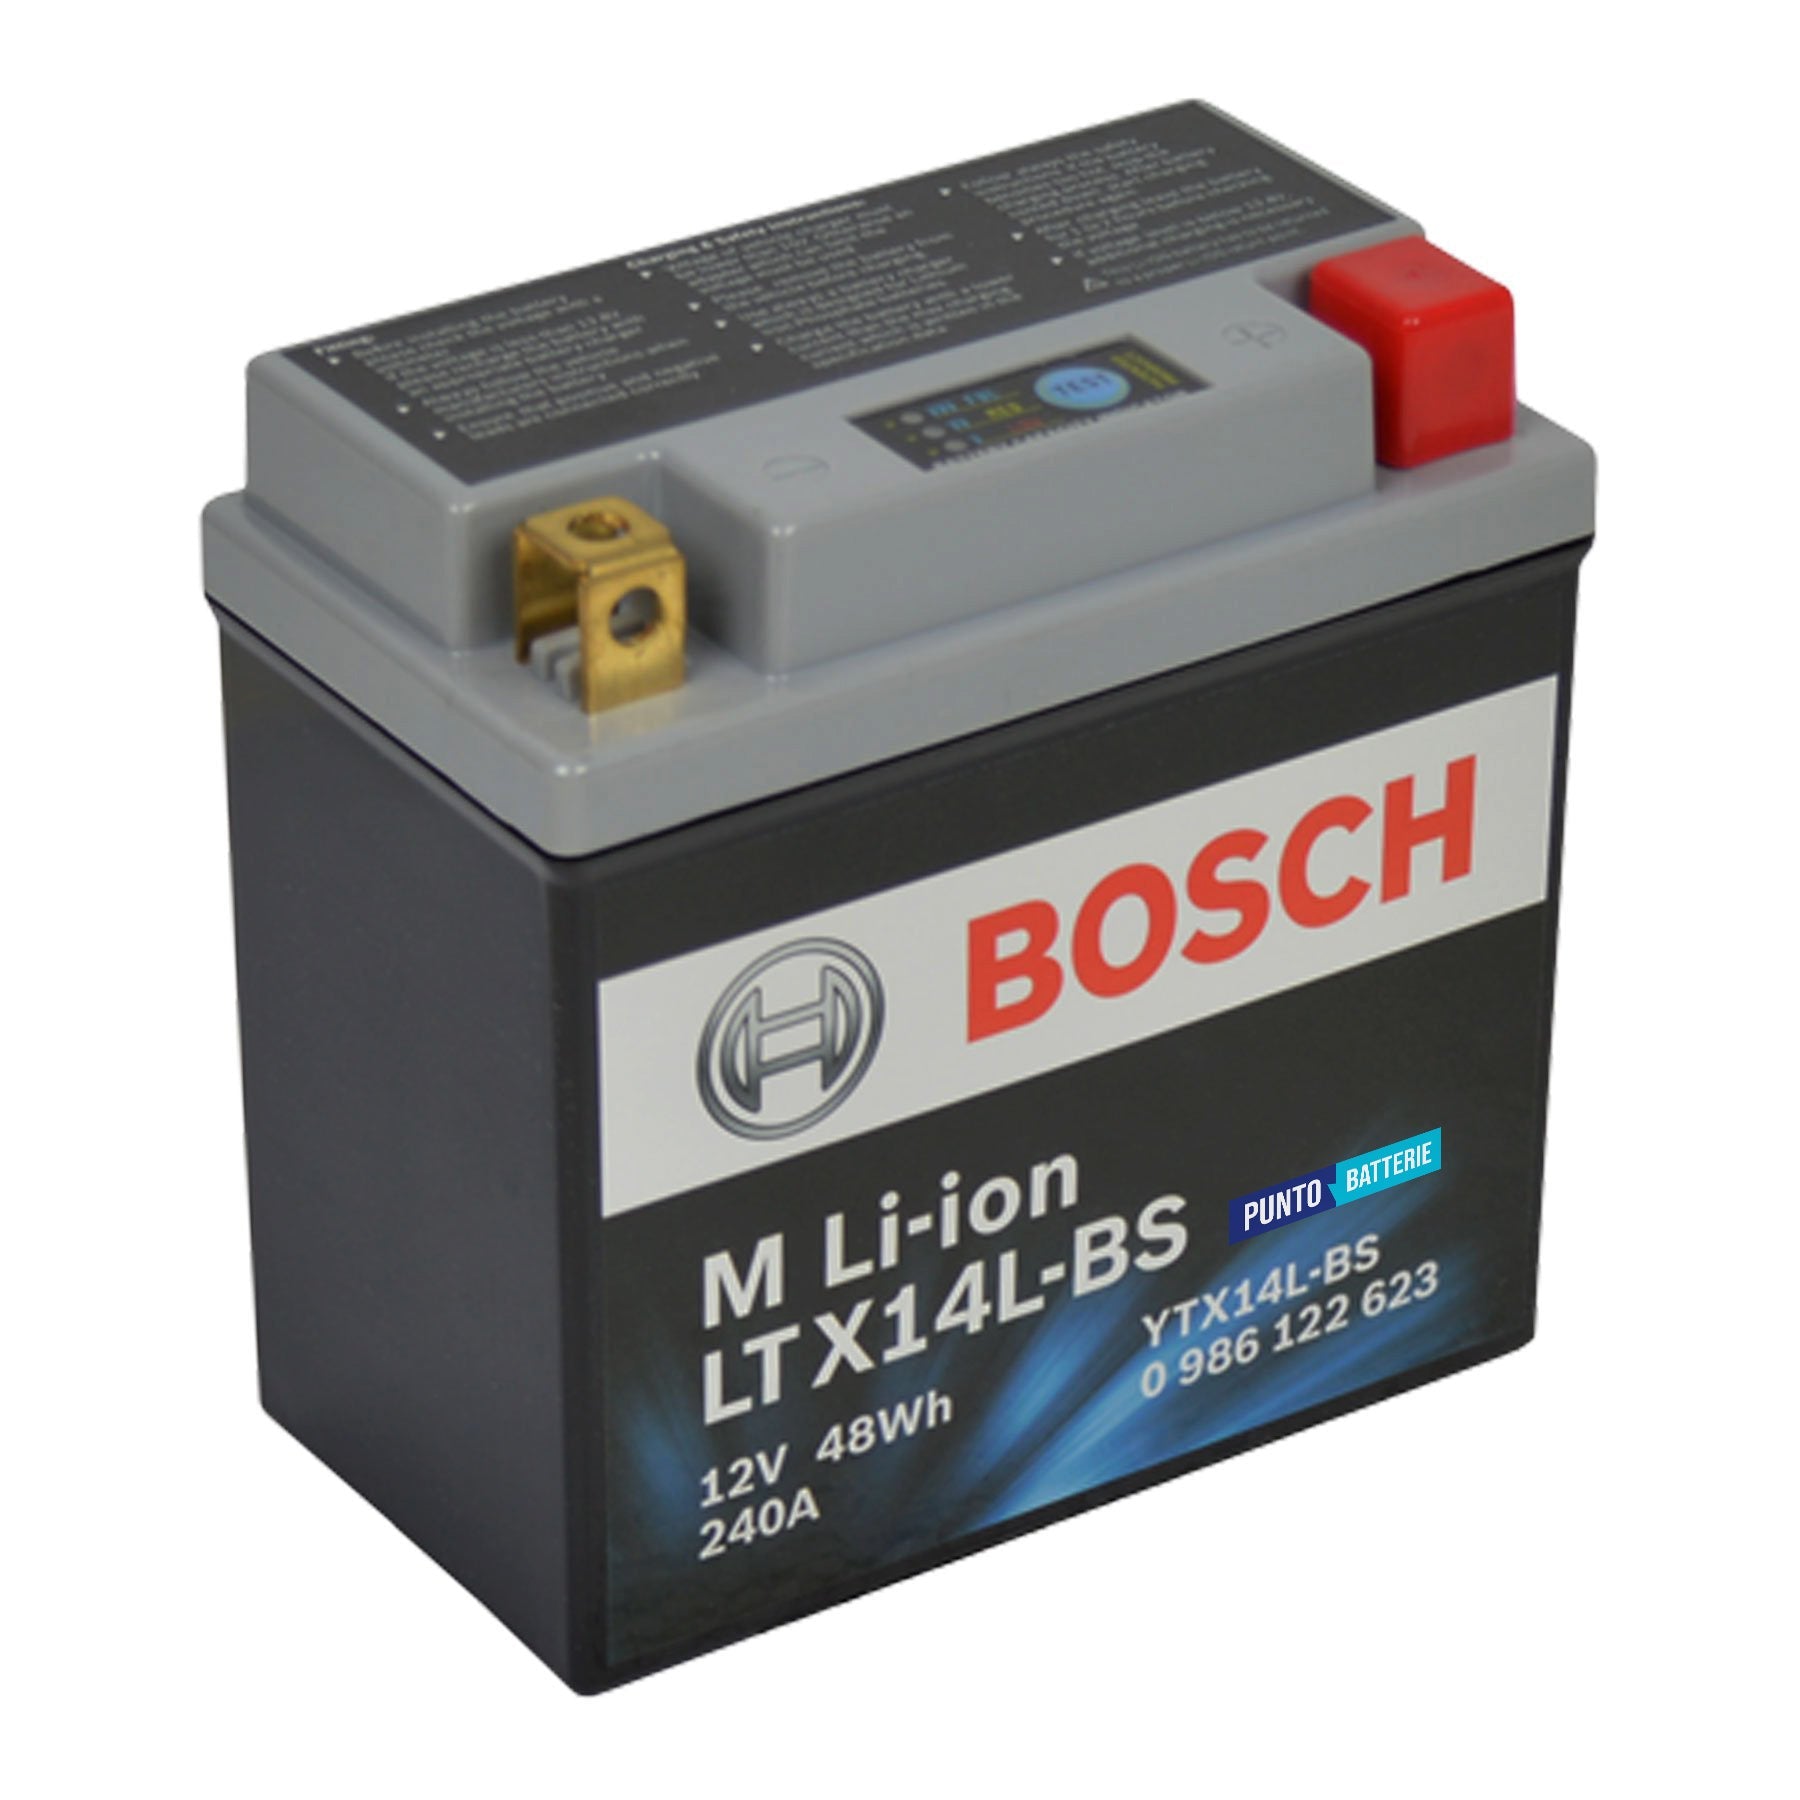 Batteria originale Bosch M Li-ion LTX14L-BS, dimensioni 150 x 87 x 143, polo positivo a destra, 12 volt, 4 amperora, 240 ampere. Batteria per moto, scooter e powersport.